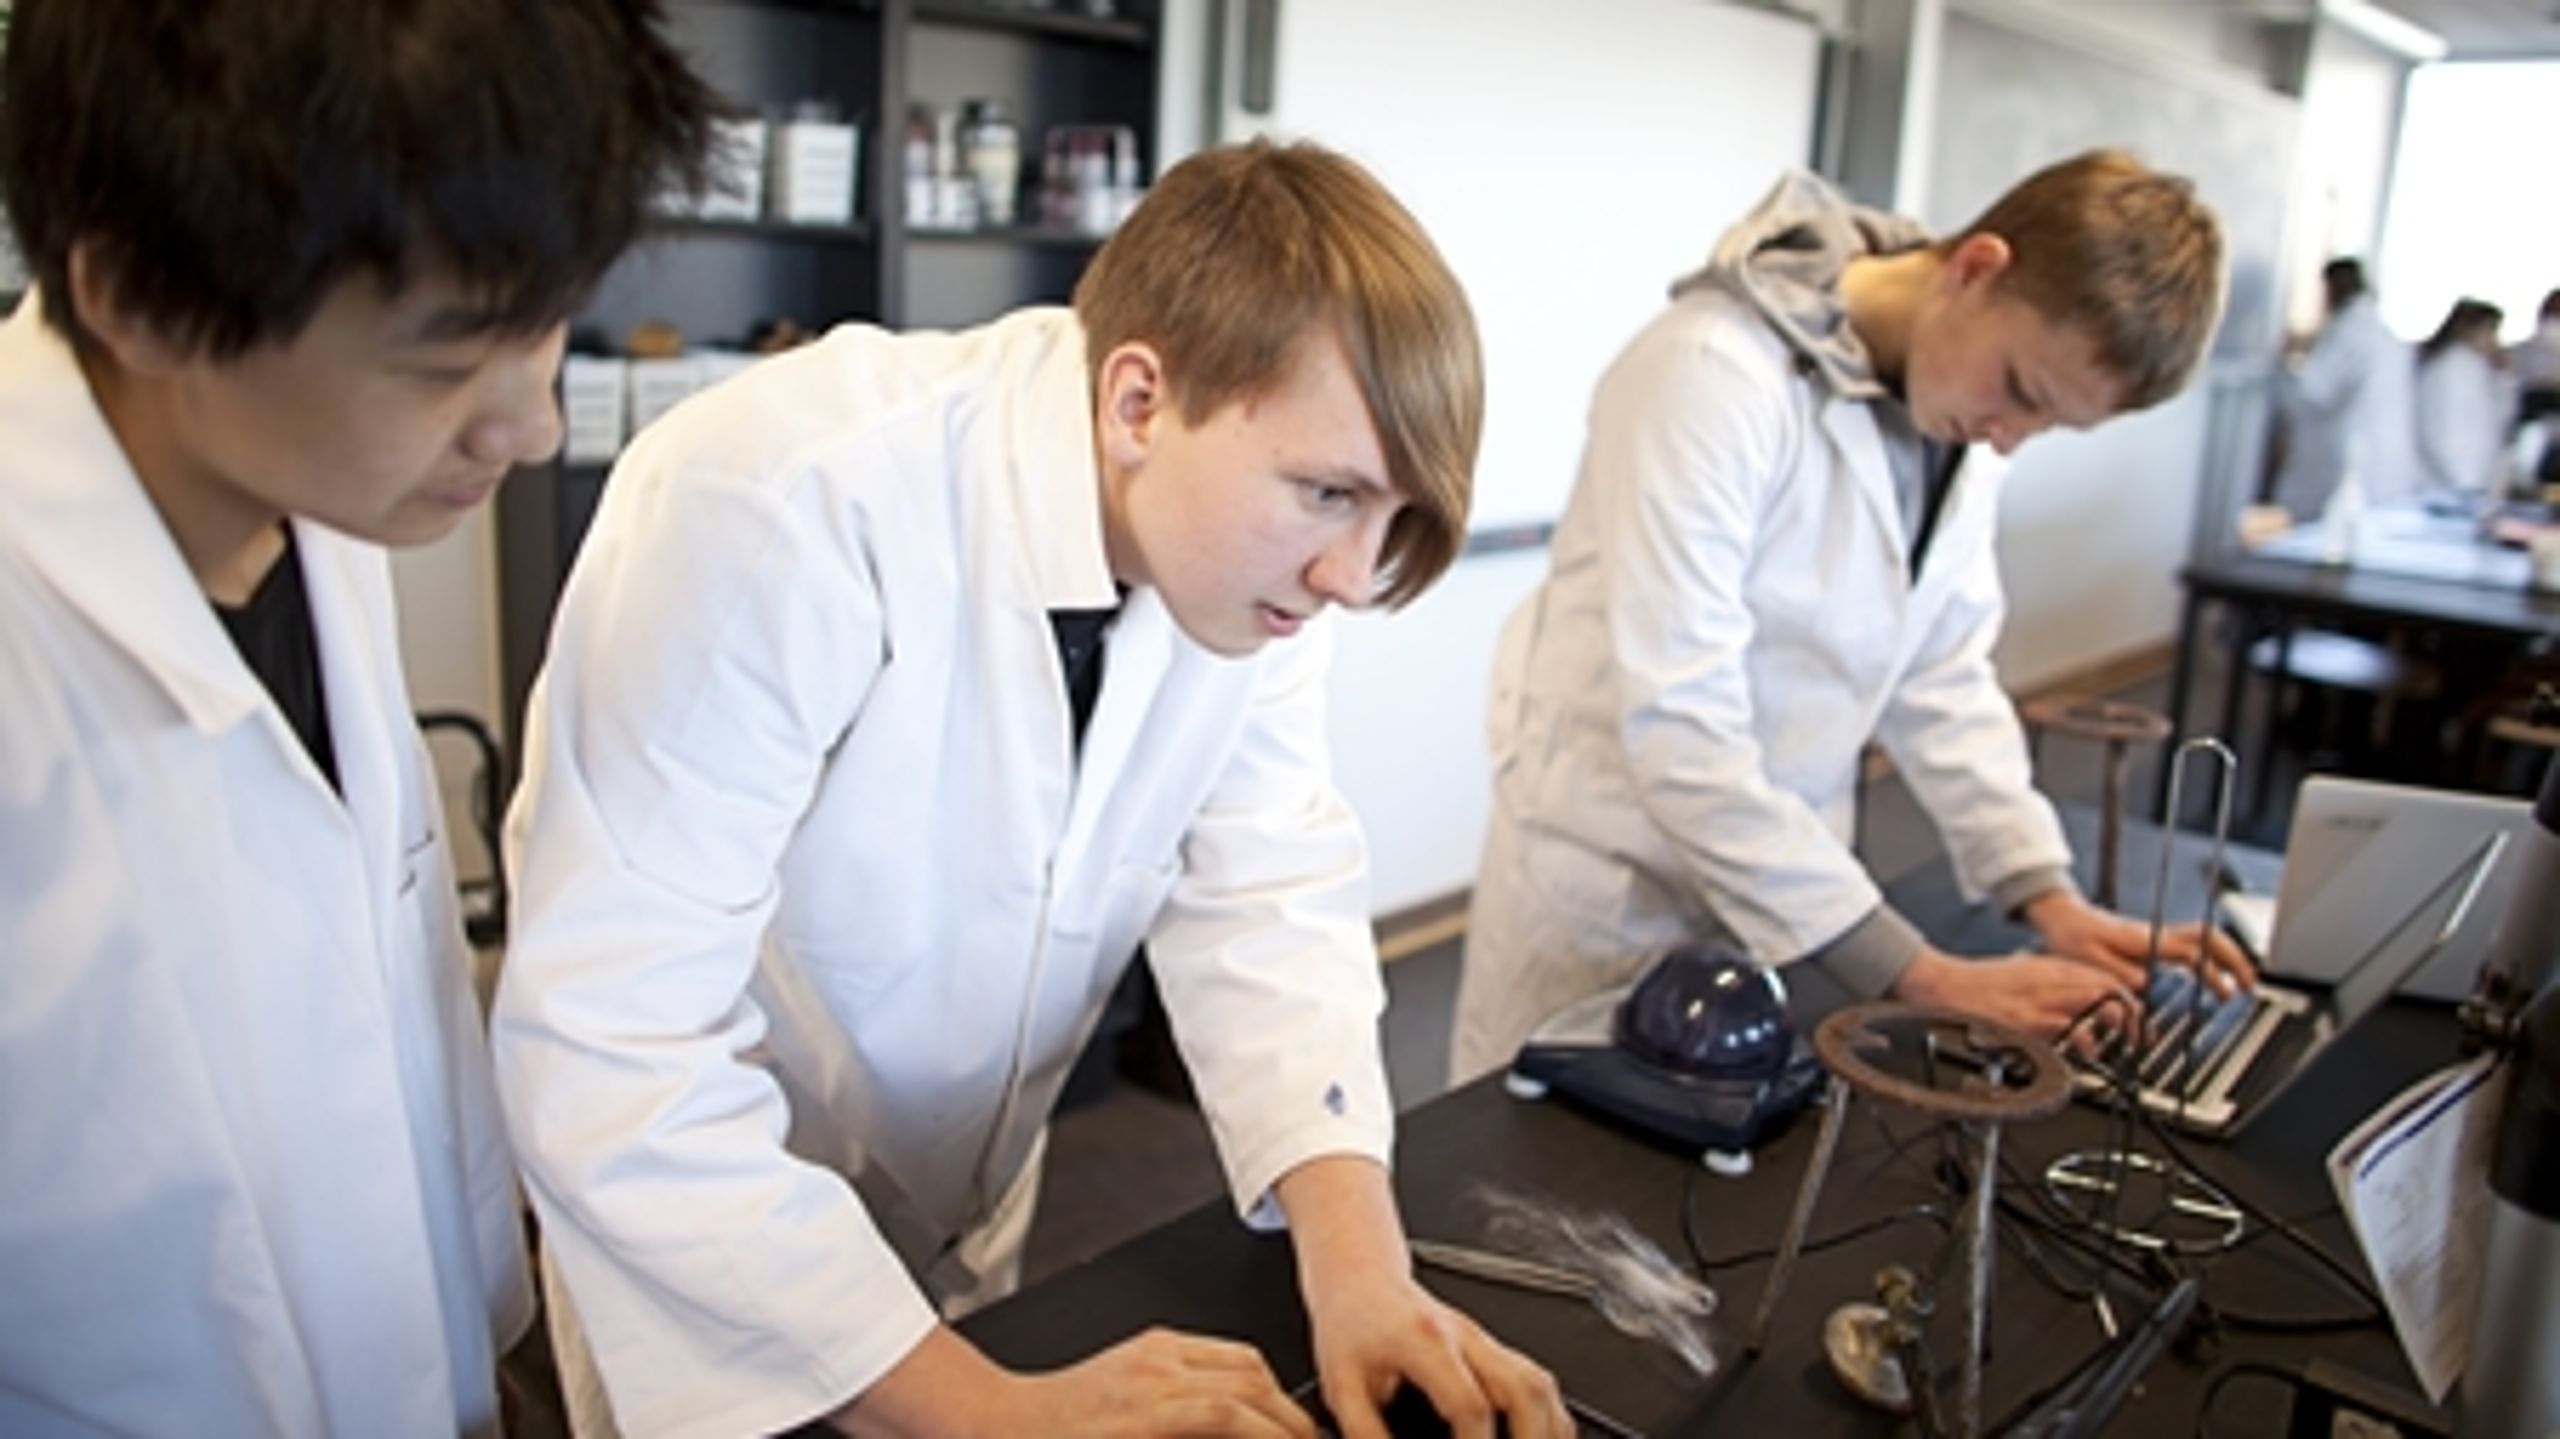 Det er især de naturvidenskabelige studieretninger, der giver adgang til mange videregående uddannelser, viser en ny analyse fra Dansk Erhverv.